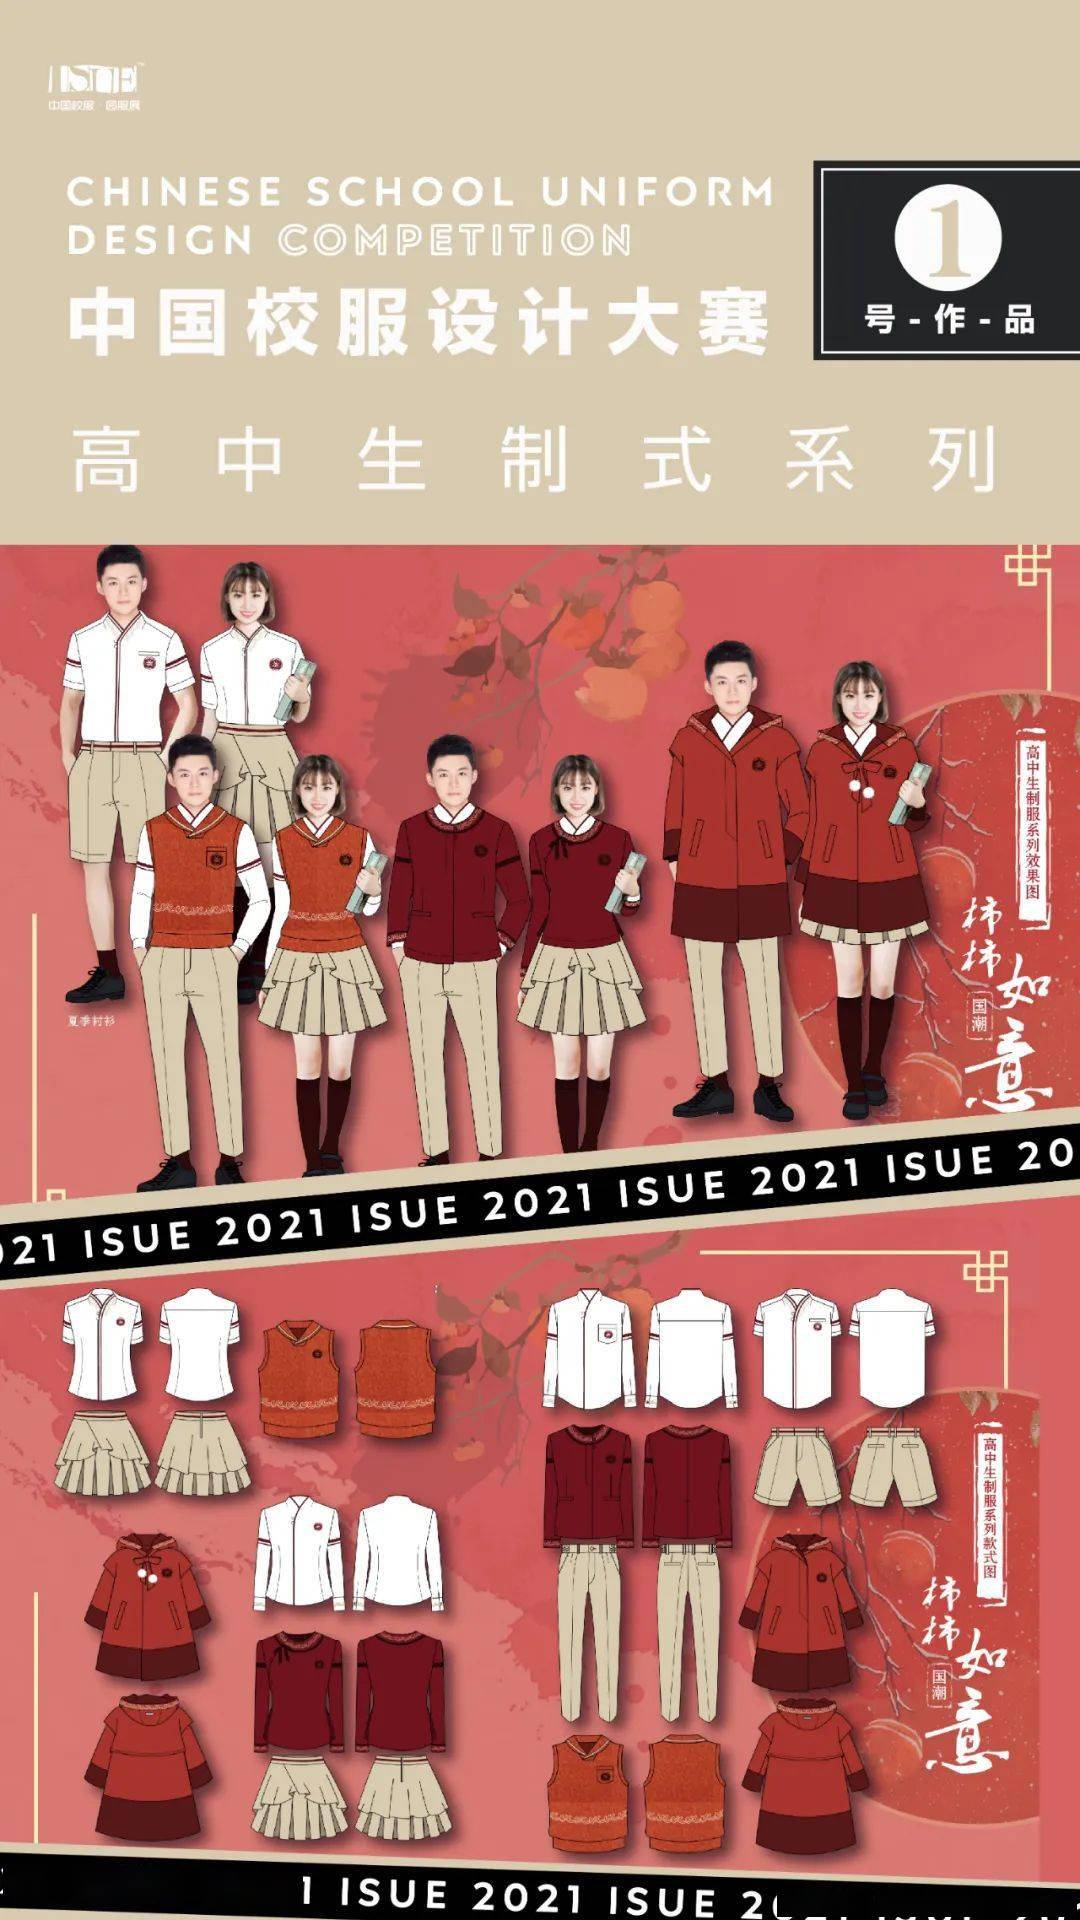 2021中国校服设计大赛各组别作品名单设计效果图